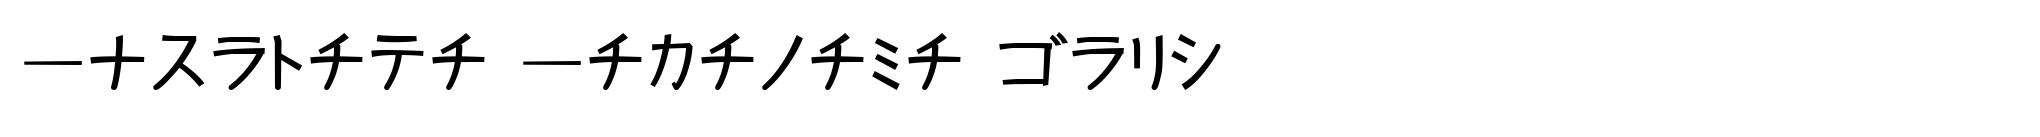 Kurosawa Katakana Bold image